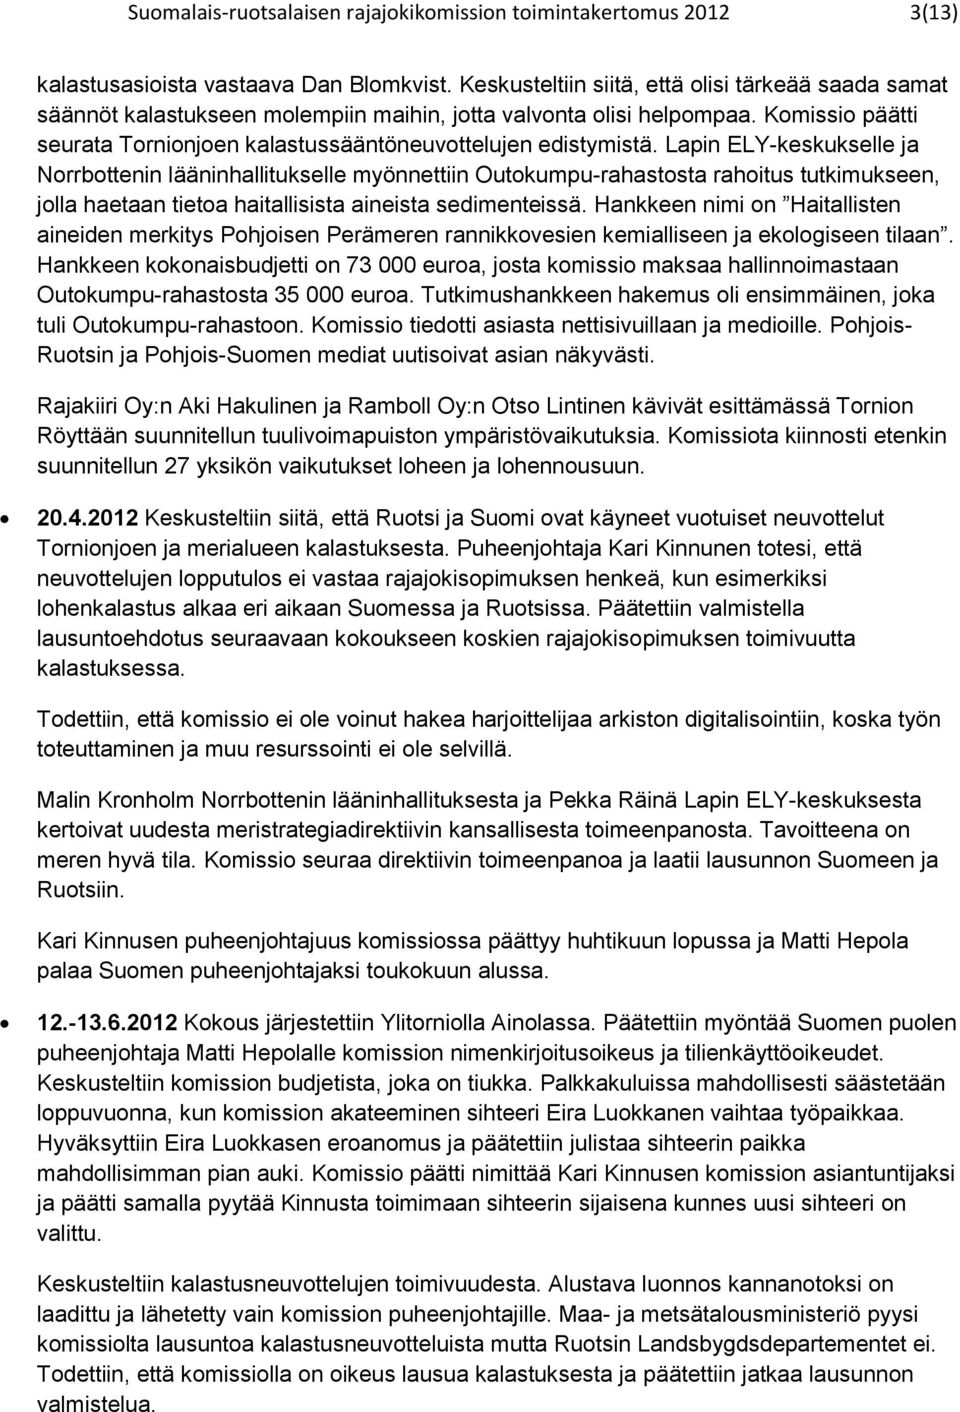 Lapin ELY-keskukselle ja Norrbottenin lääninhallitukselle myönnettiin Outokumpu-rahastosta rahoitus tutkimukseen, jolla haetaan tietoa haitallisista ainsta sedimentssä.